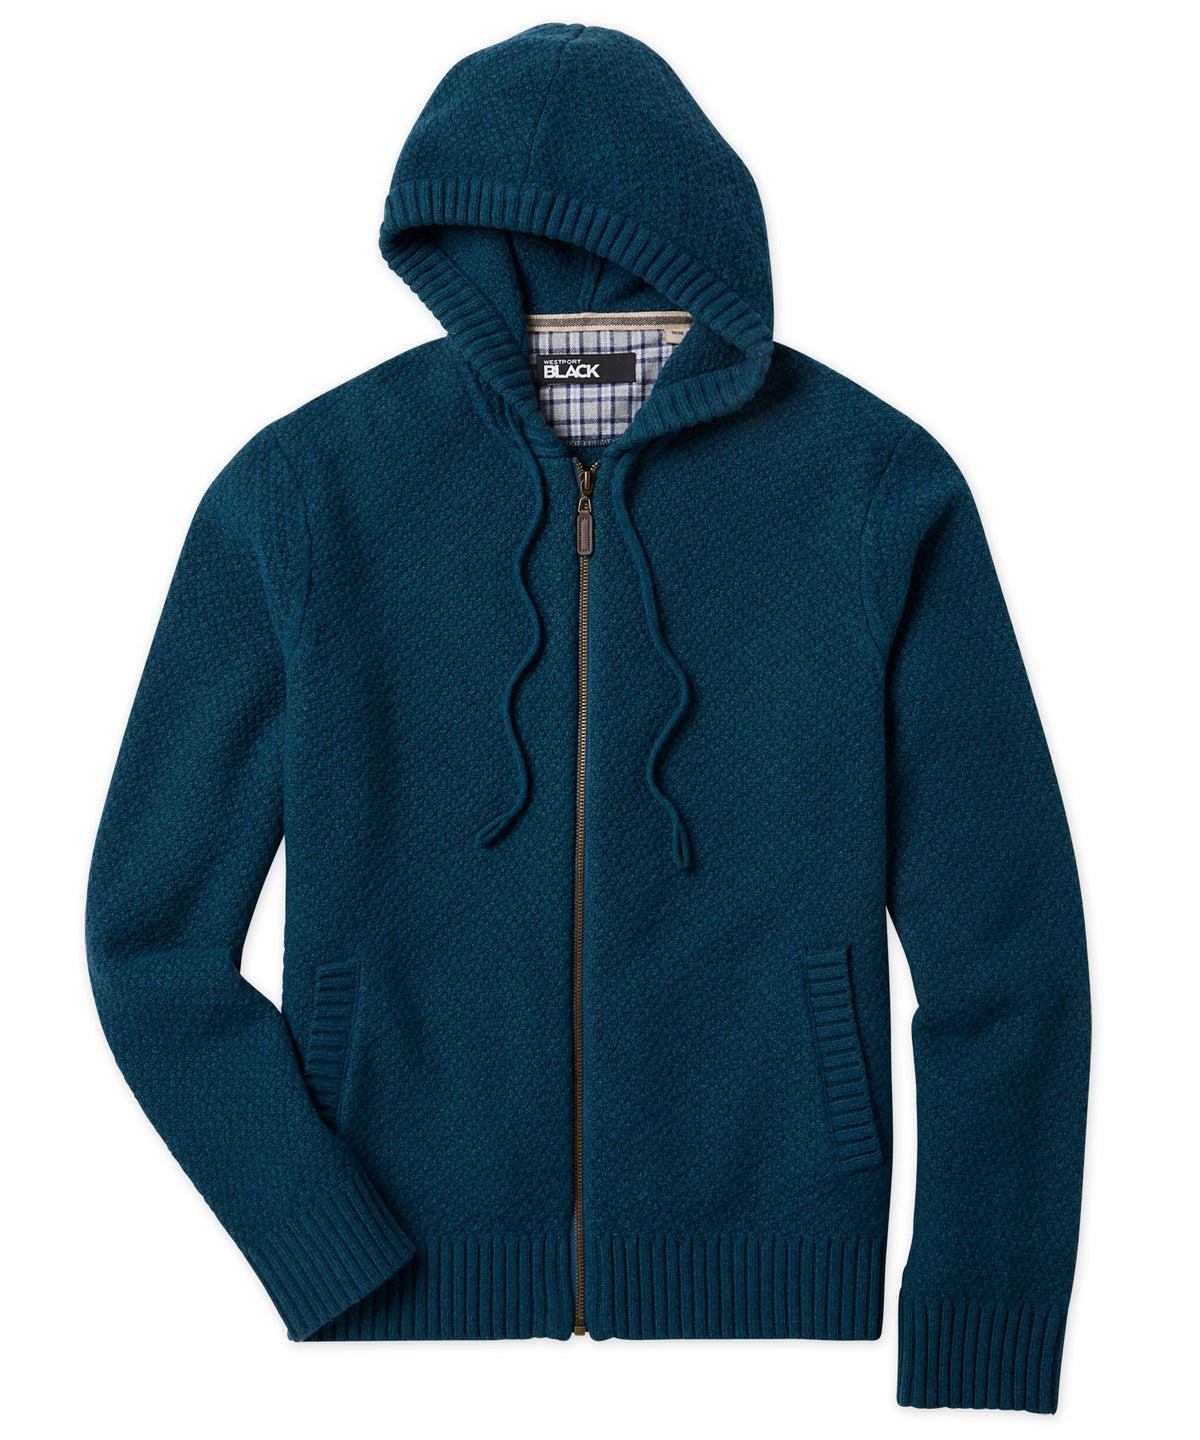 Westport Black Hoodie Zip-Up Sweater